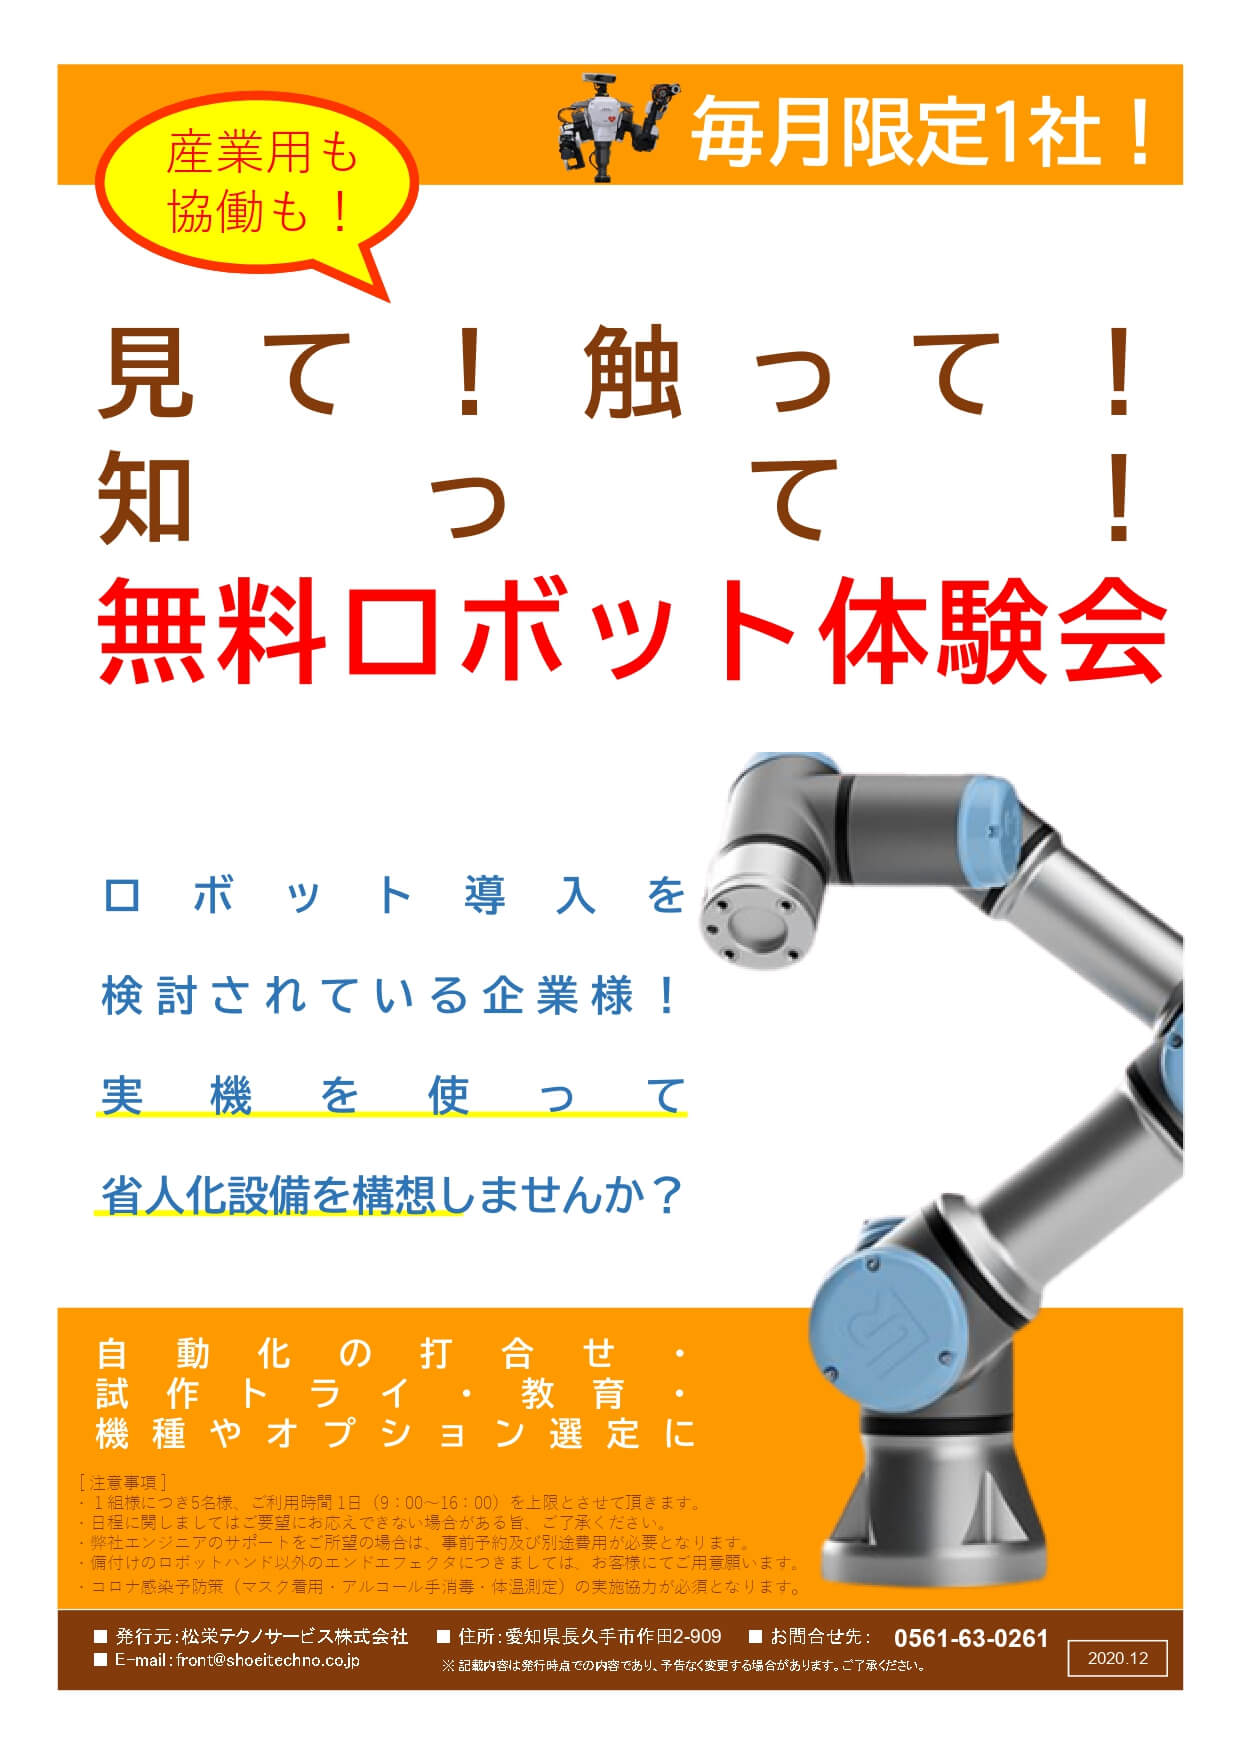 無料ロボット体験会開催のお知らせ